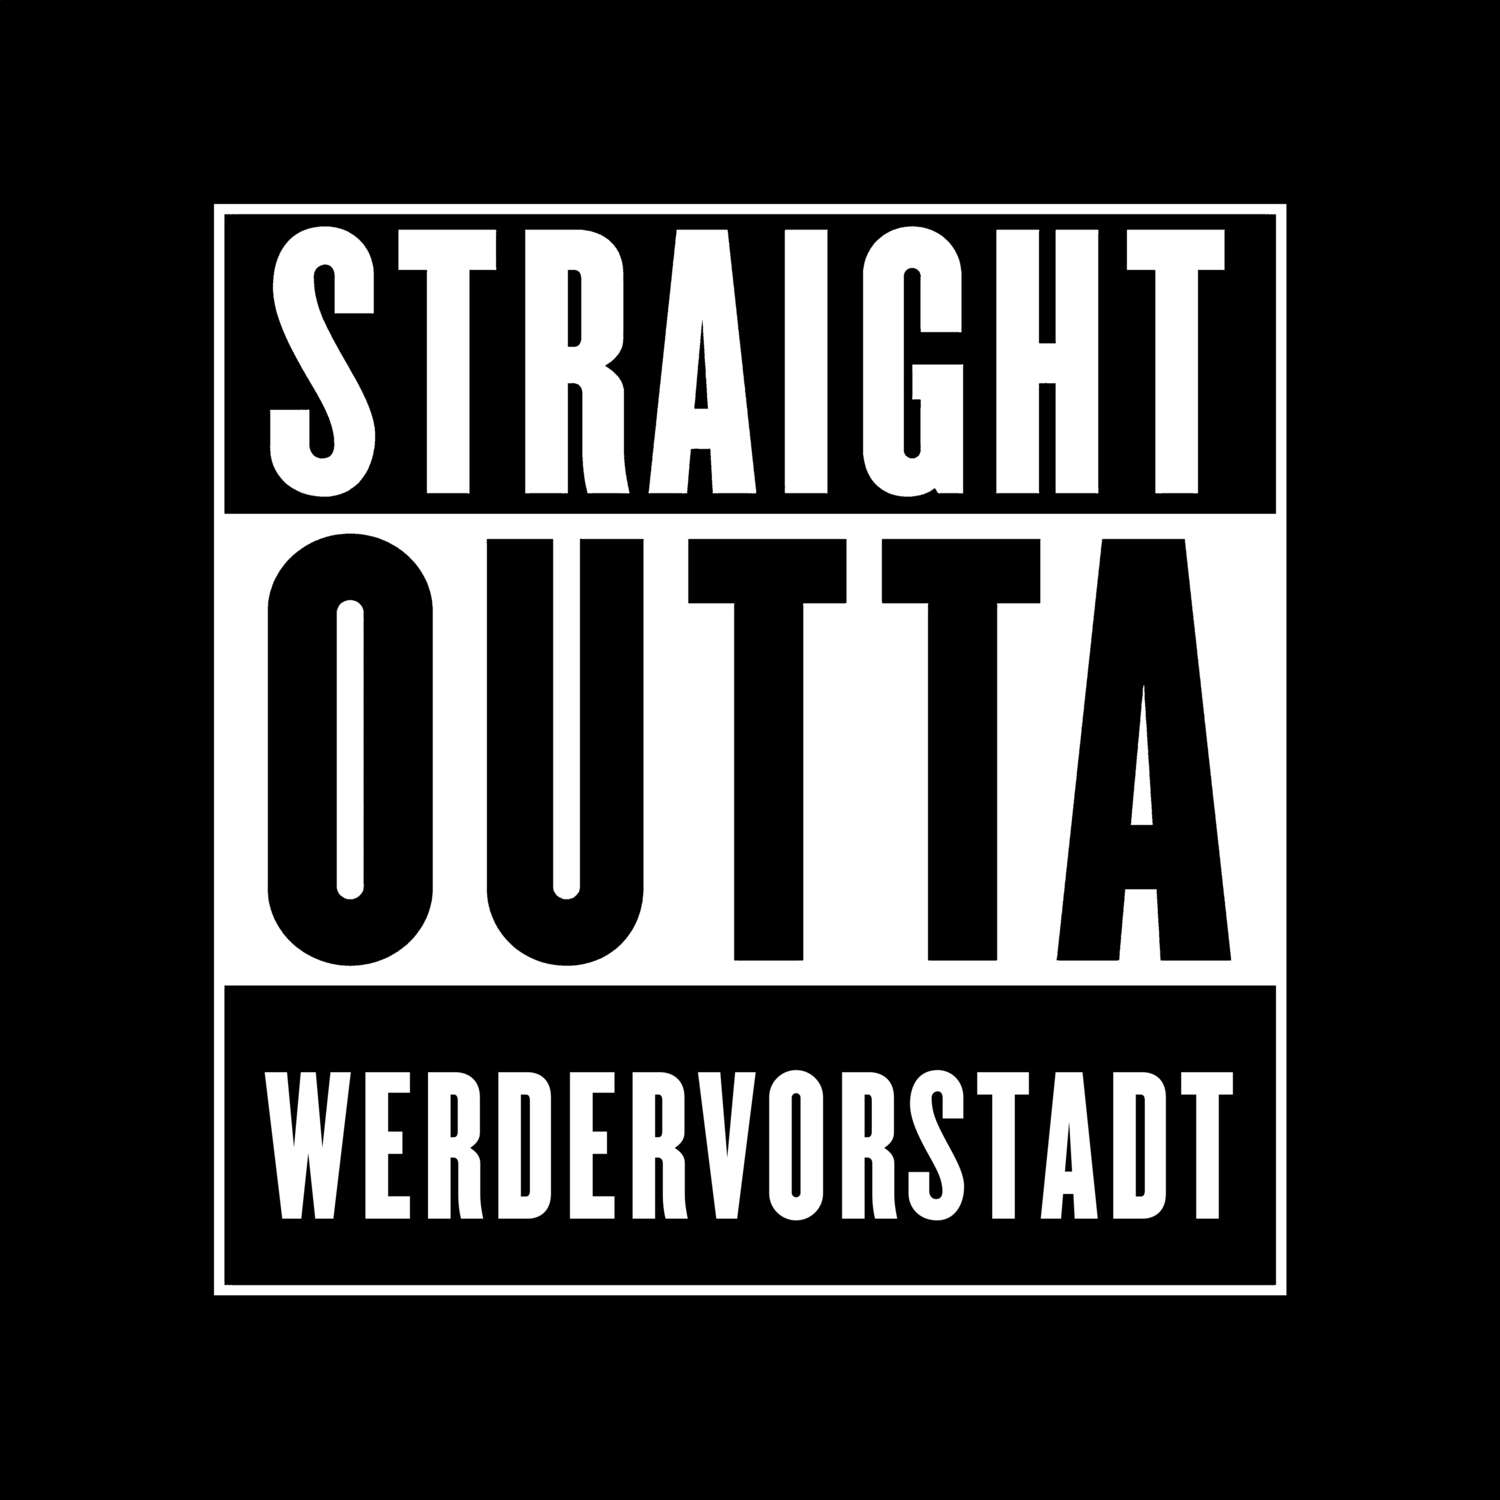 Werdervorstadt T-Shirt »Straight Outta«